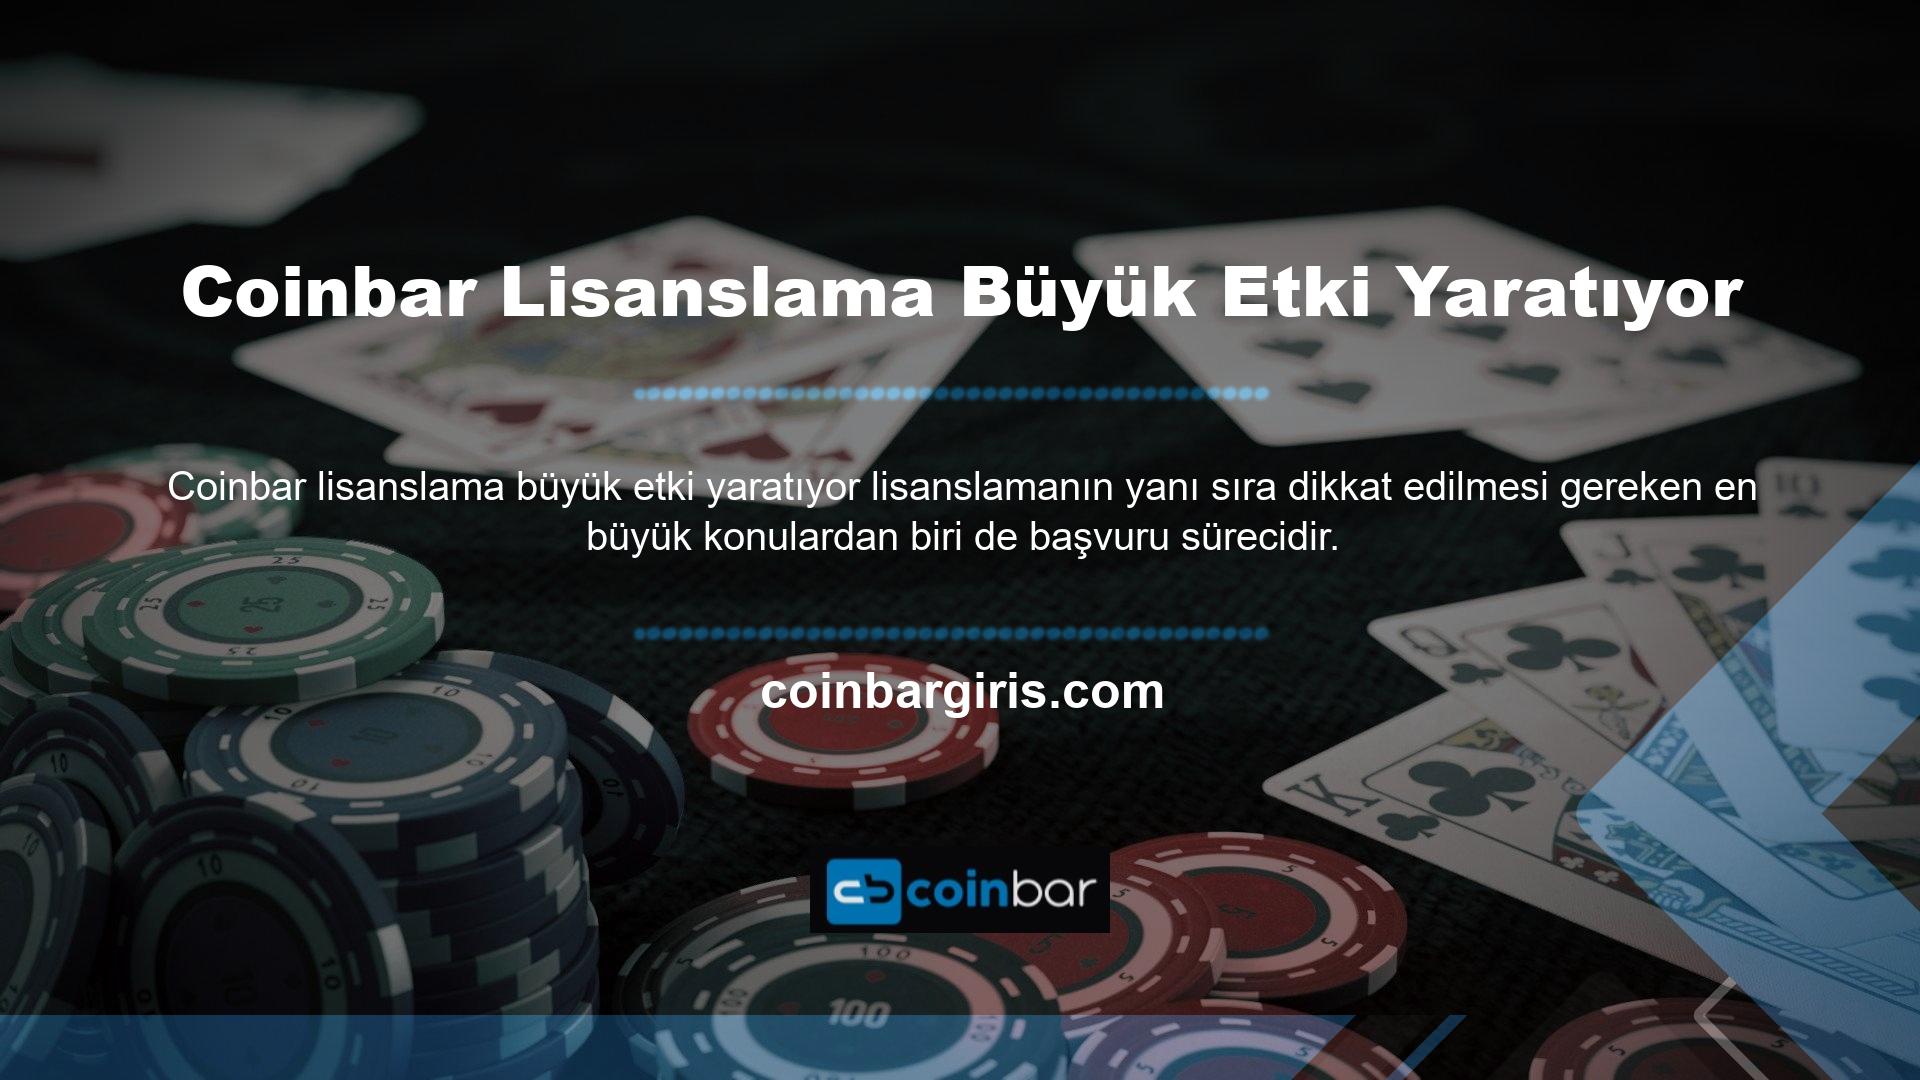 Coinbar para yatırma yöntemleri oldukça hızlı ve güvenlidir ve birçok casino oyununa katılmış olanlar bile paralarını kolayca çekebilirler